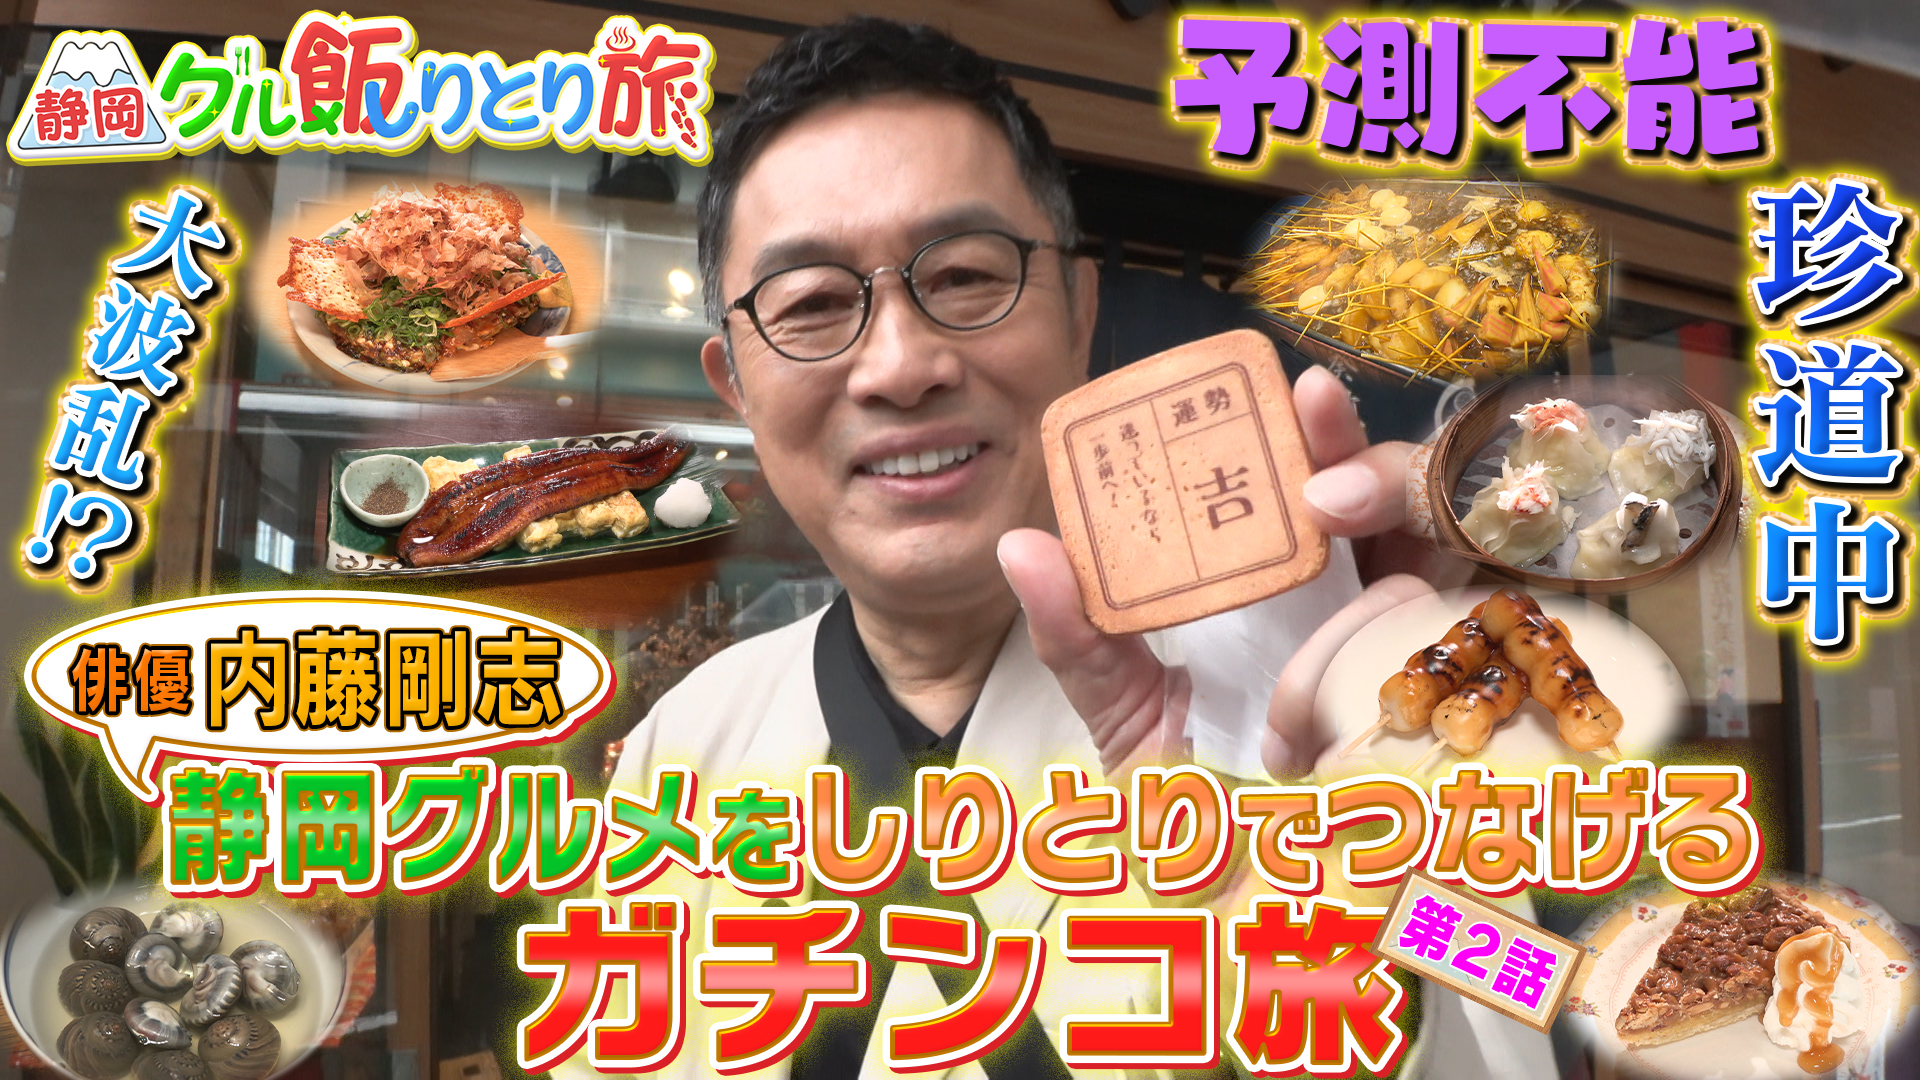 無料テレビで内藤剛志の静岡グル飯りとり旅を視聴する